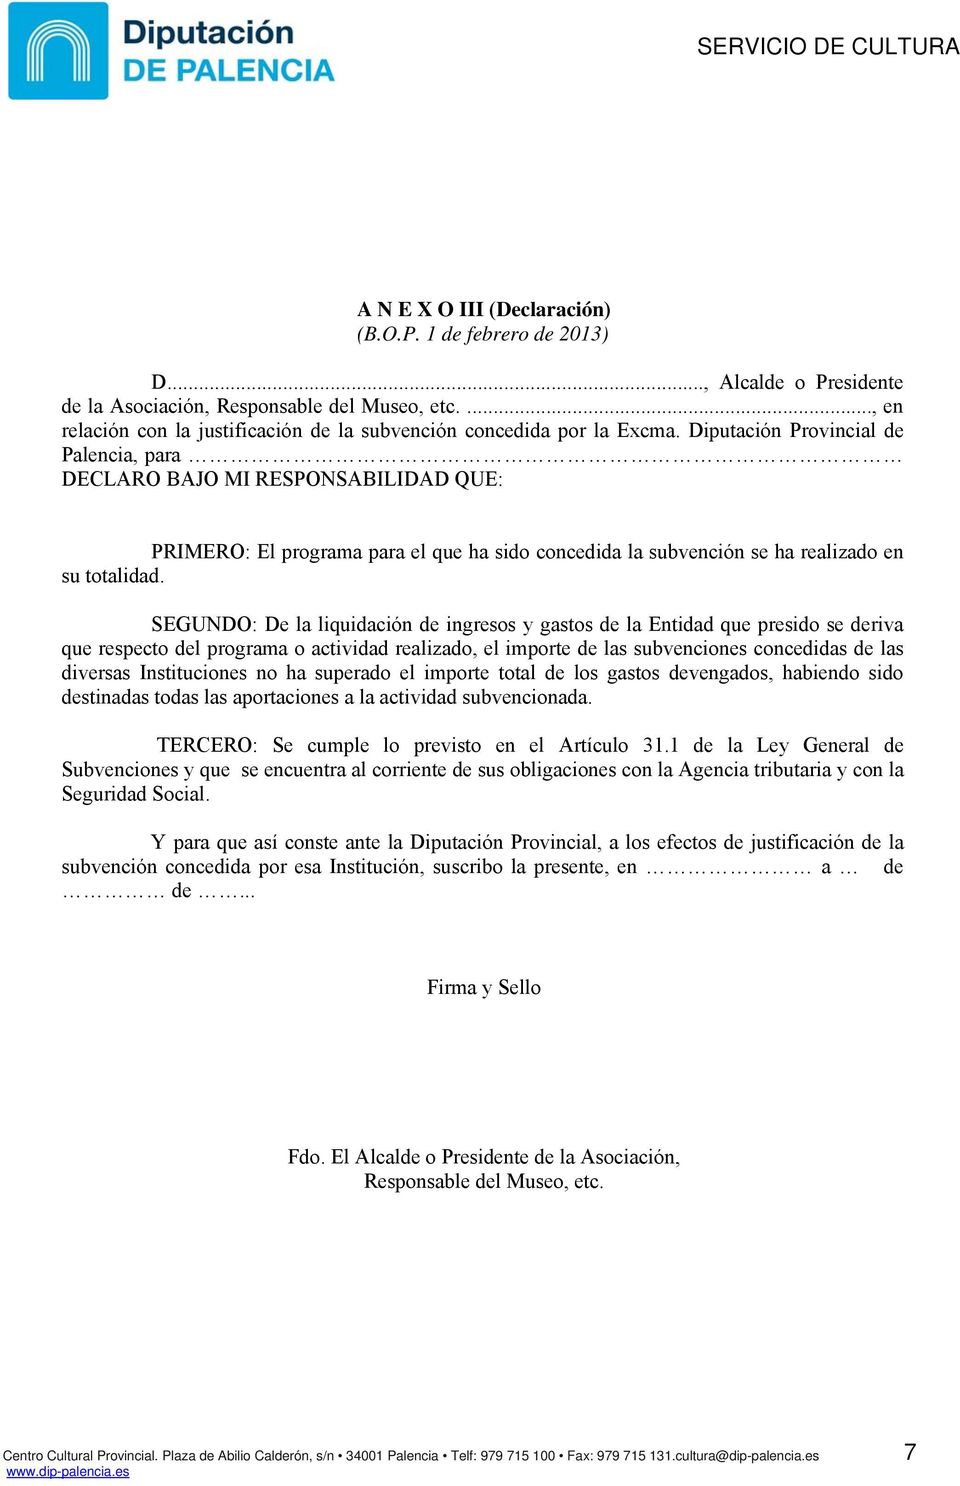 Diputación Provincial de Palencia, para DECLARO BAJO MI RESPONSABILIDAD QUE: PRIMERO: El programa para el que ha sido concedida la subvención se ha realizado en su totalidad.